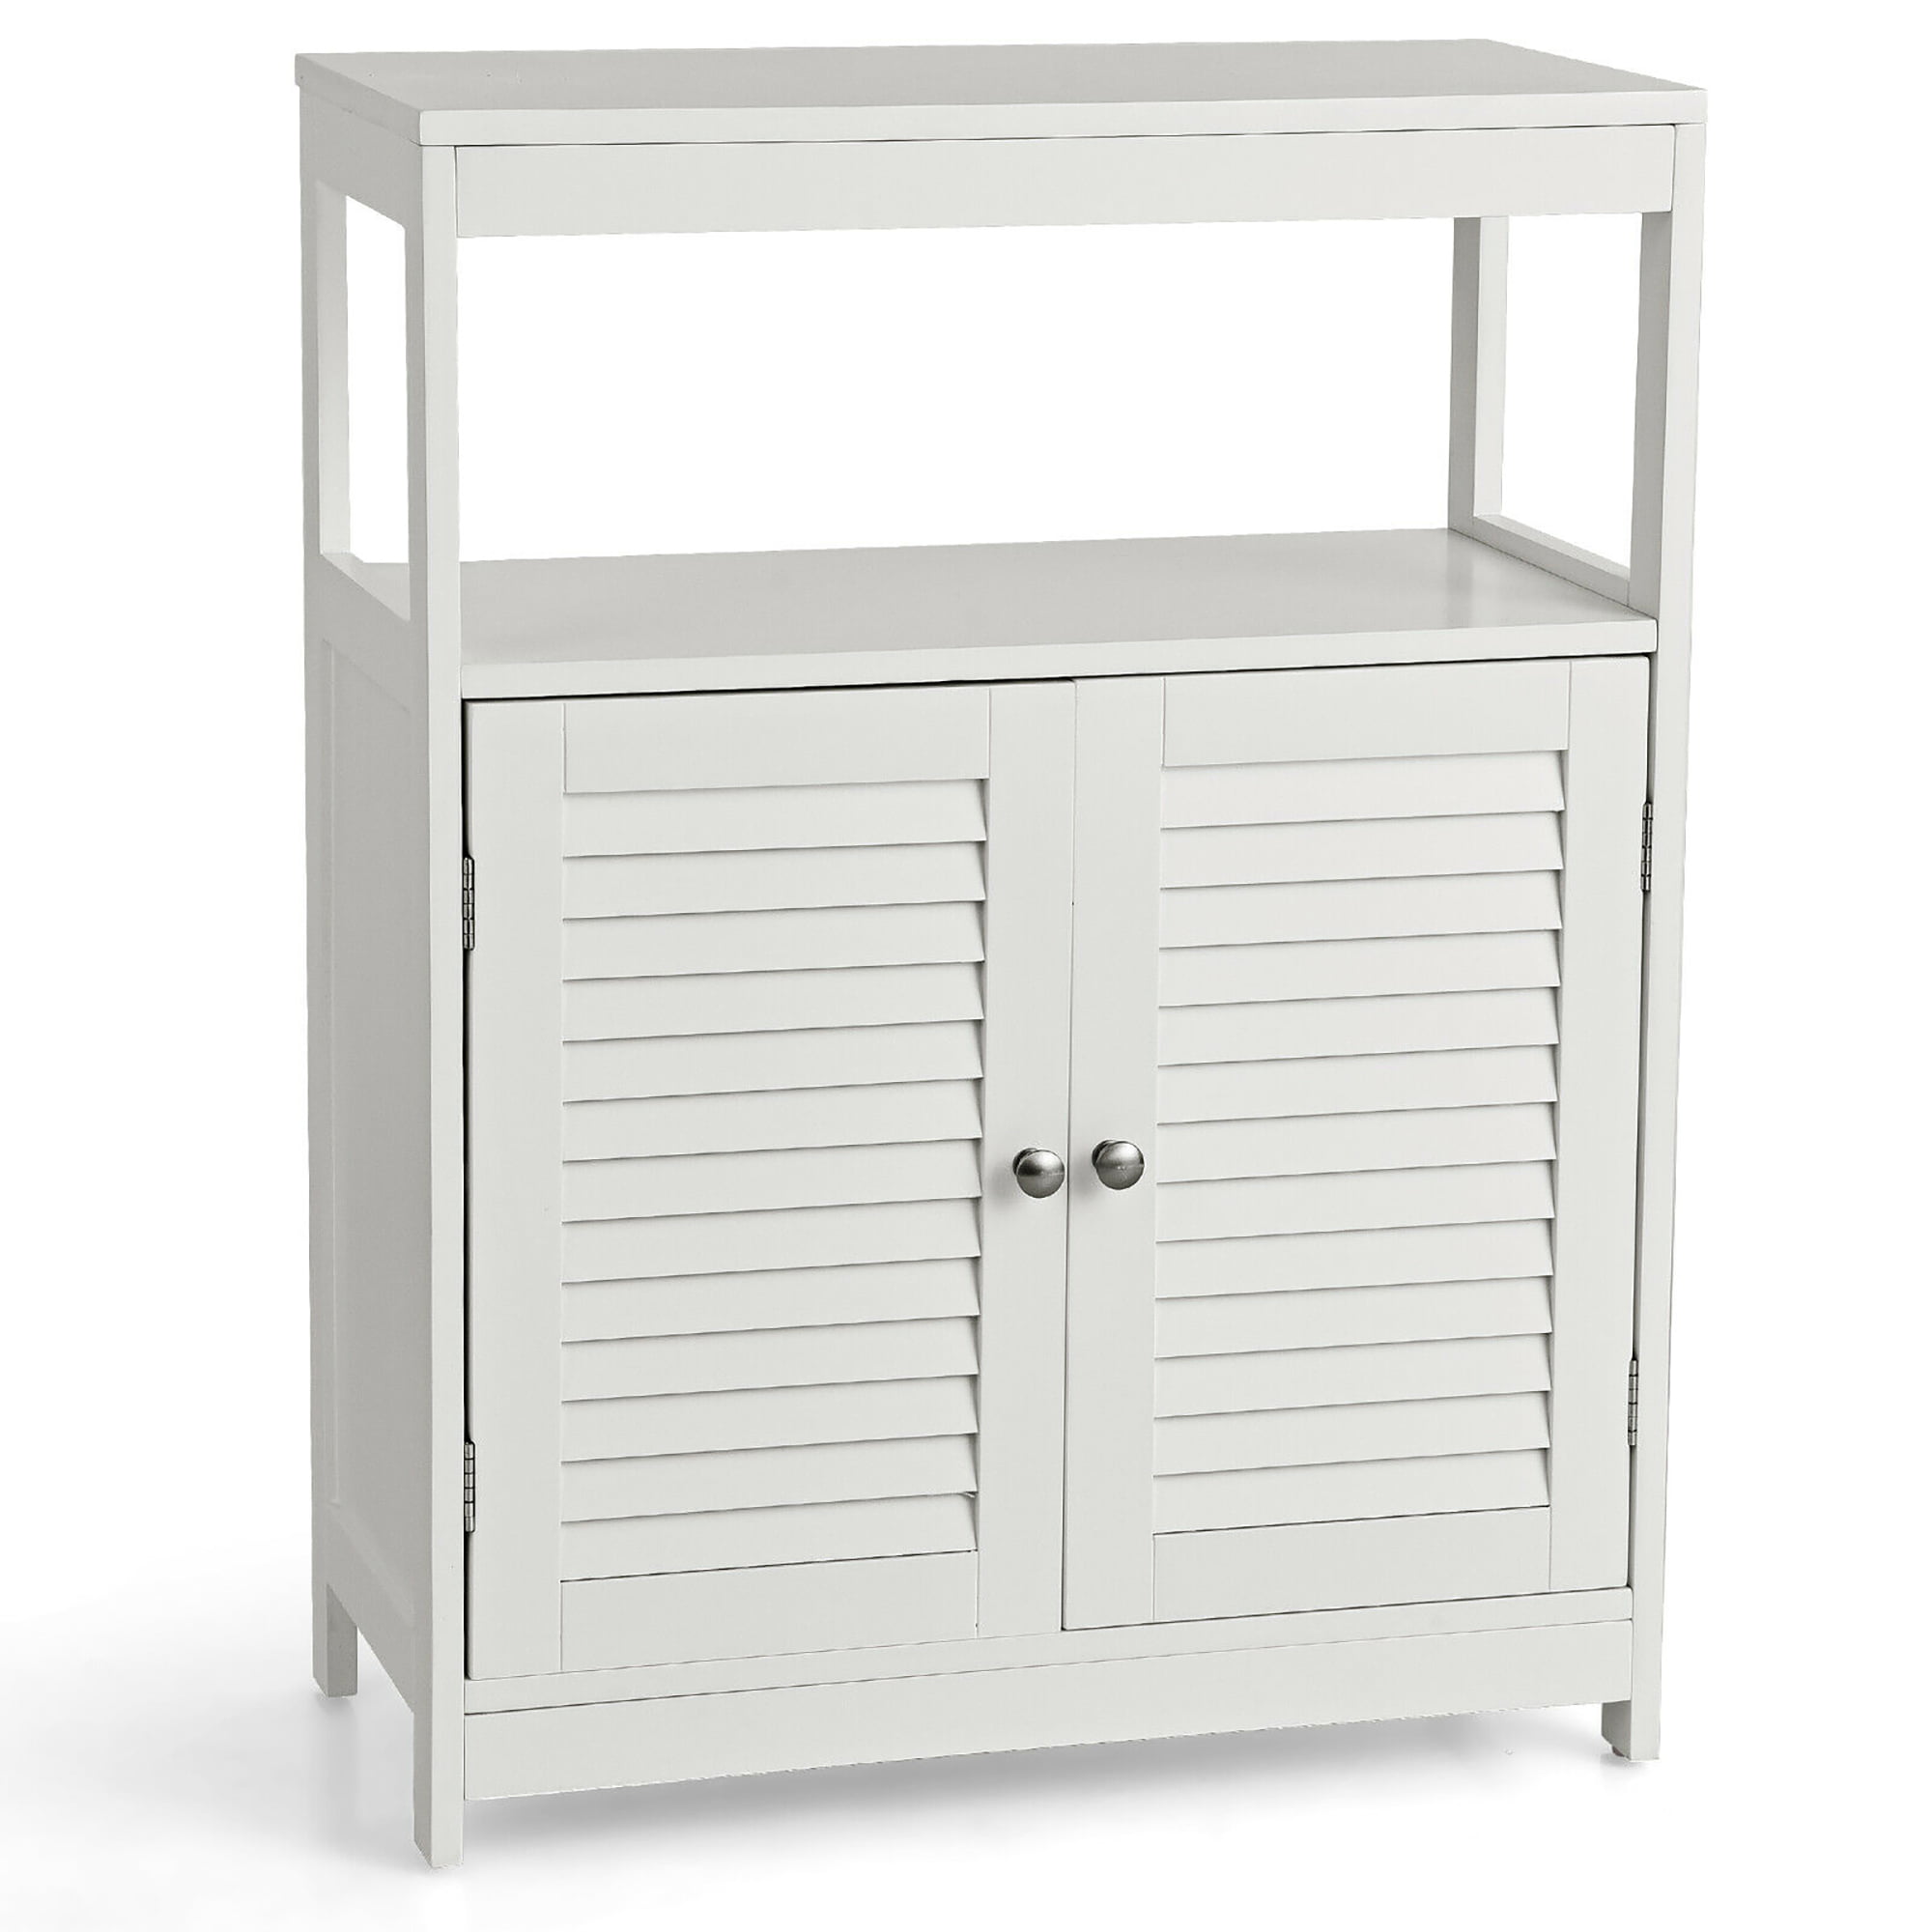 2 Door Bathroom Floor Cabinet Free Standing Storage Organizer w/Adjustable Shelf 